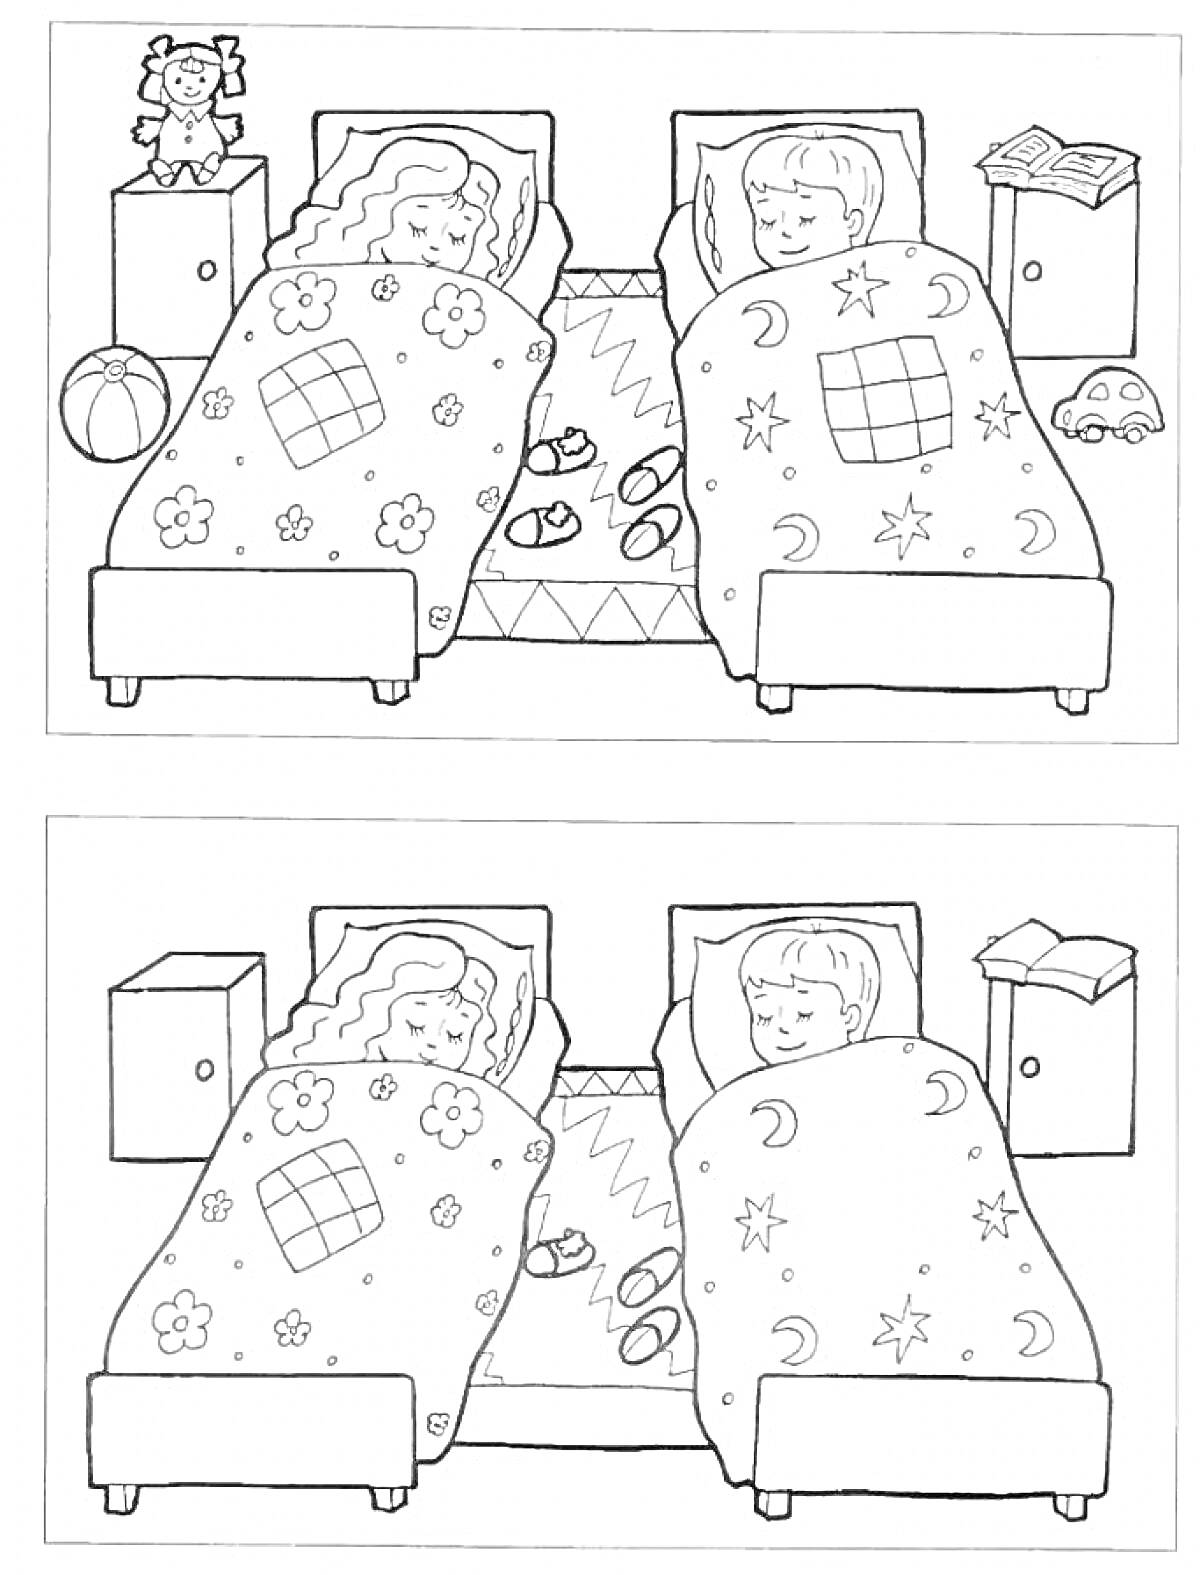 Раскраска Найди отличия между двумя рисунками с двумя спящими детьми в кроватях с одеялами, игрушками и предметами мебели вокруг.